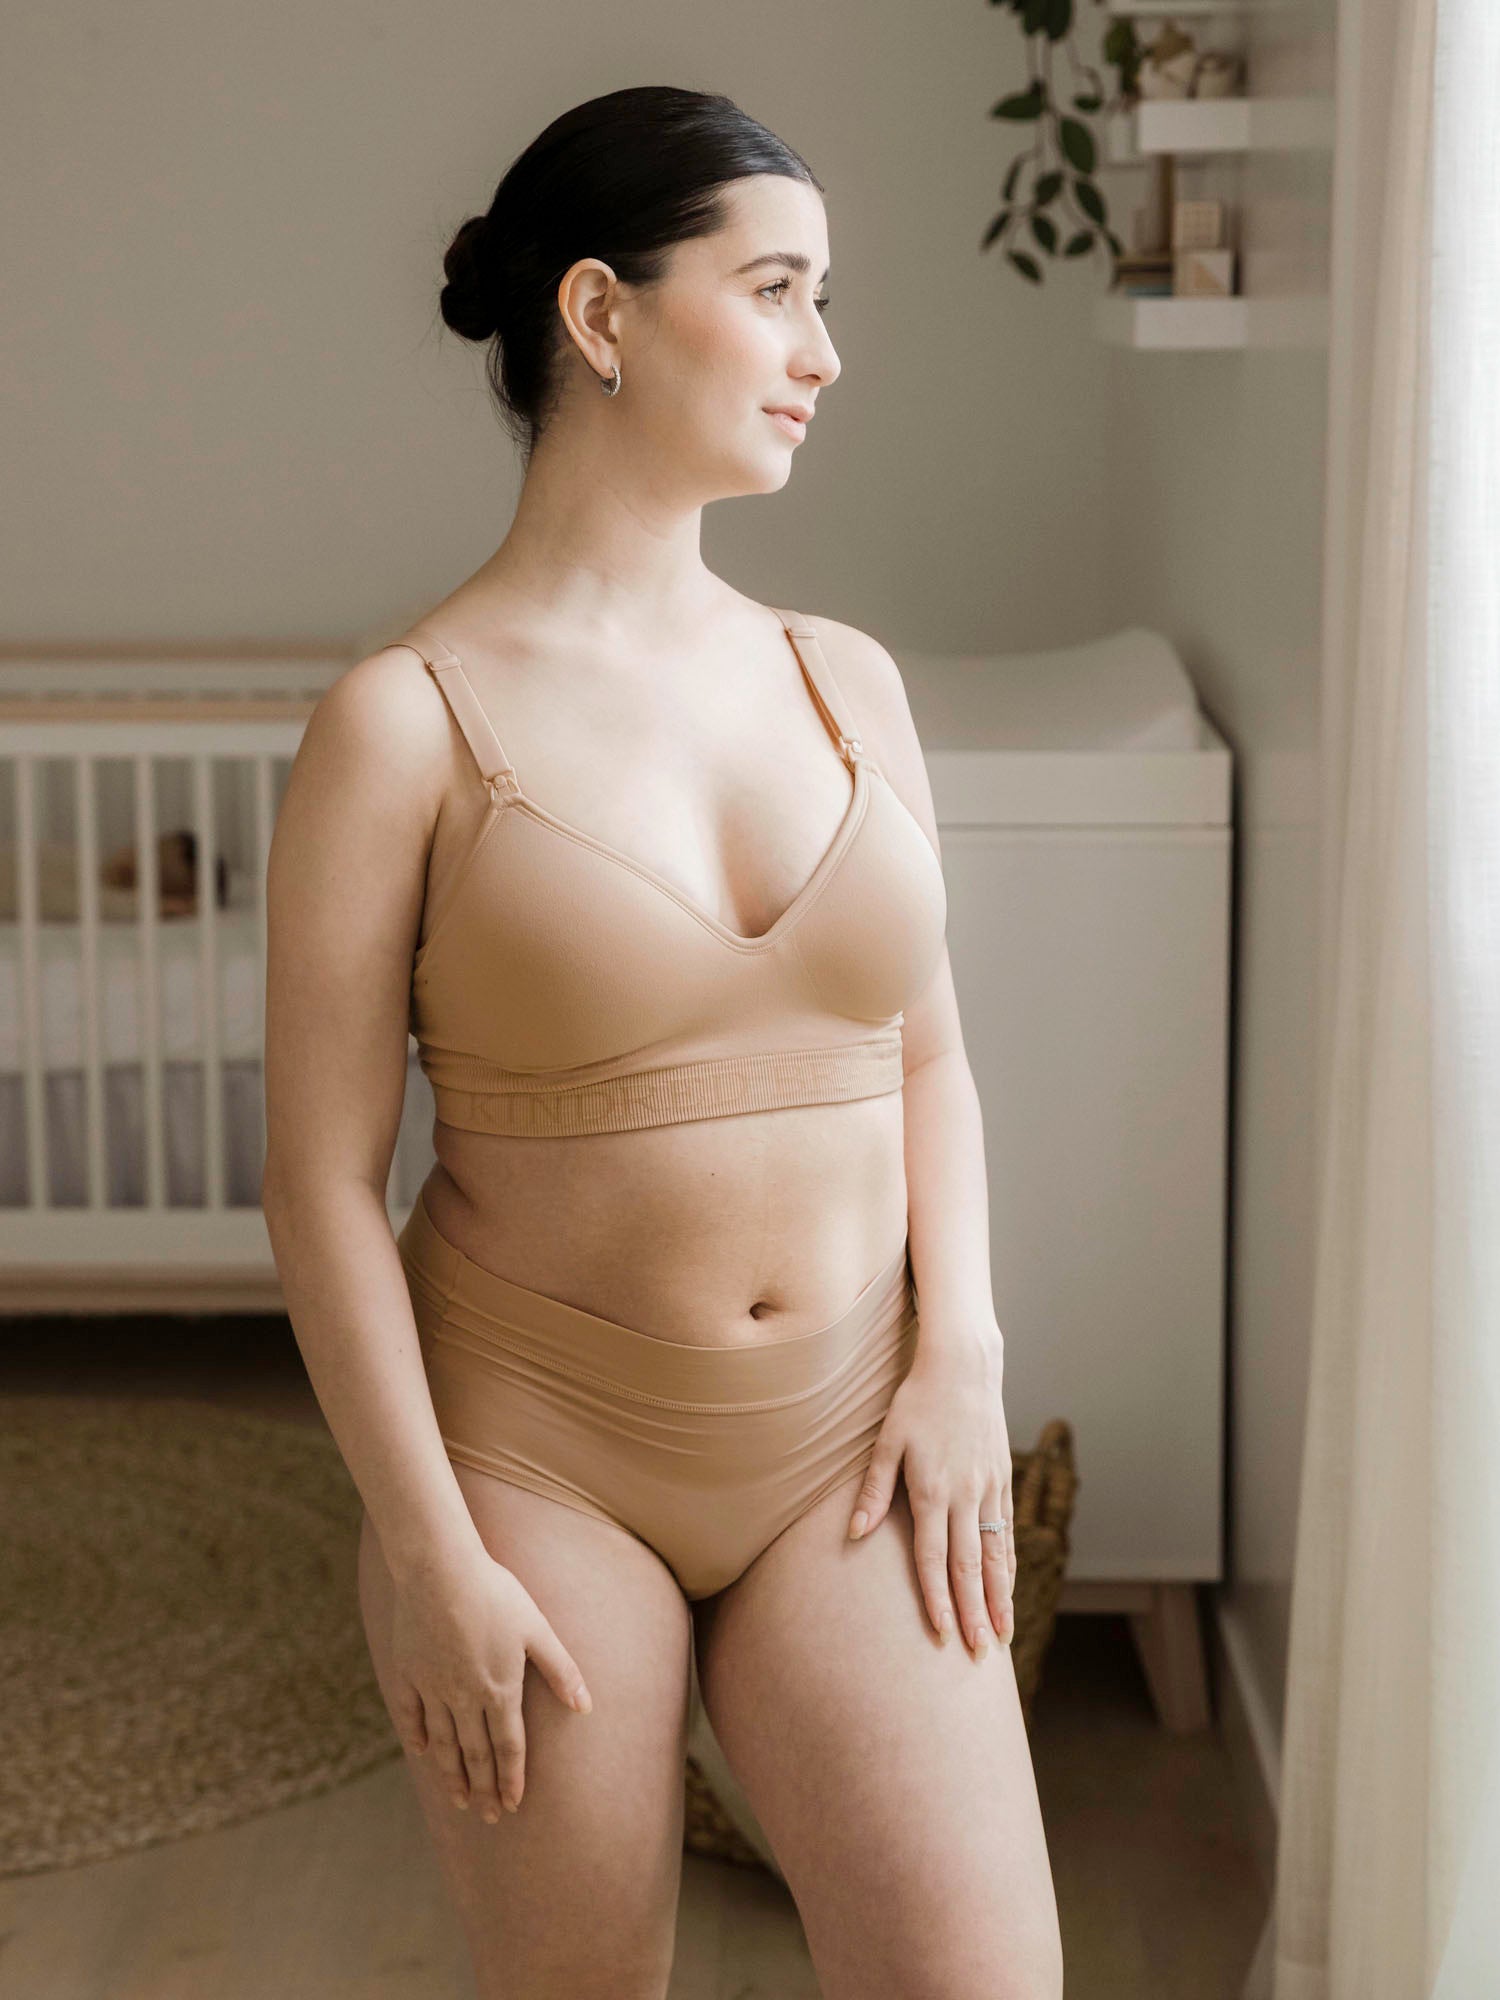 Buy online Beige Nylon Maternitynursing Bra from lingerie for Women by  Mamma Presto for ₹689 at 47% off